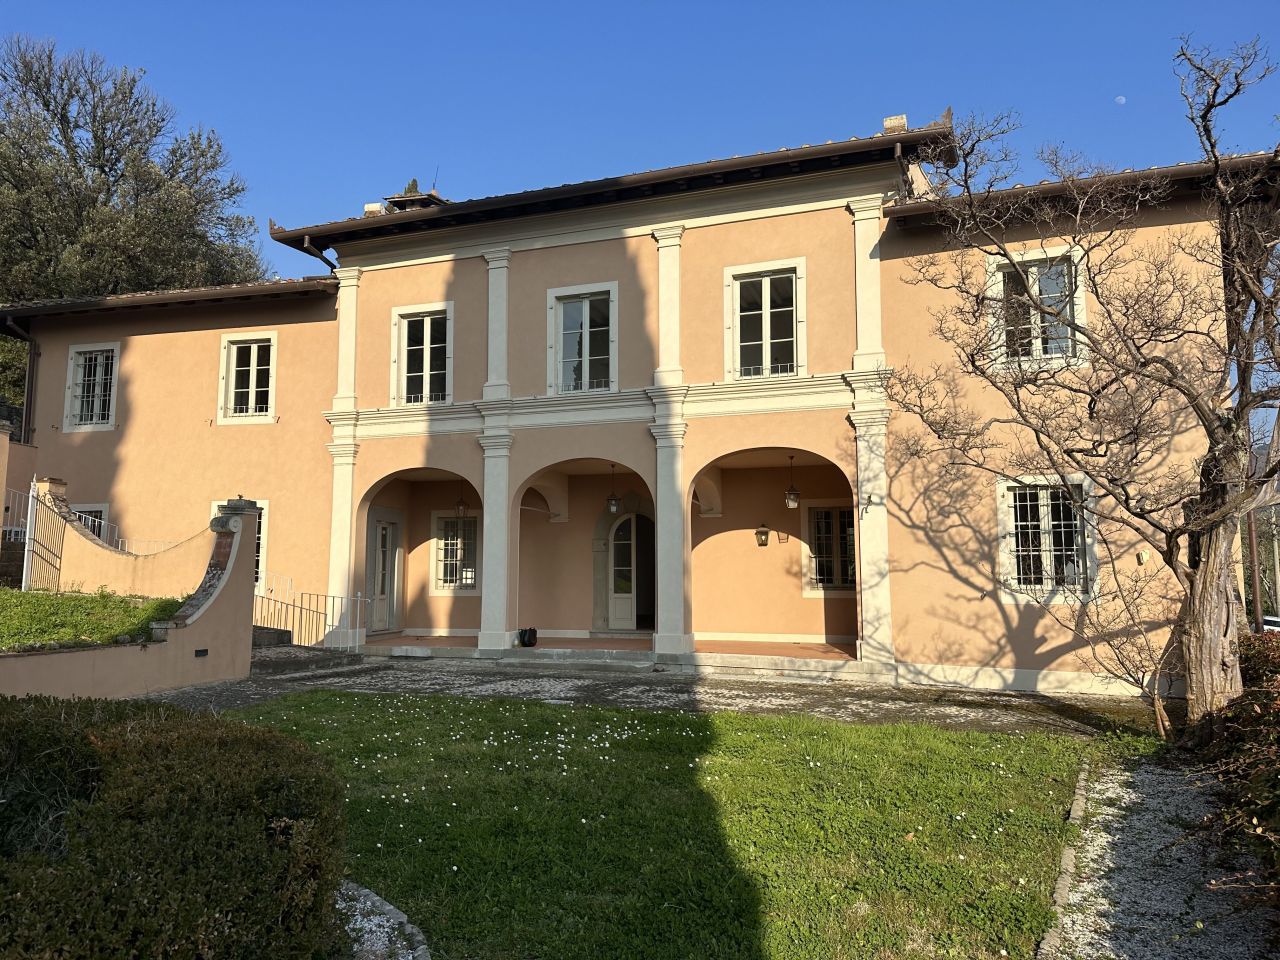 Villa in Montecatini Terme, Italy, 850 sq.m - picture 1